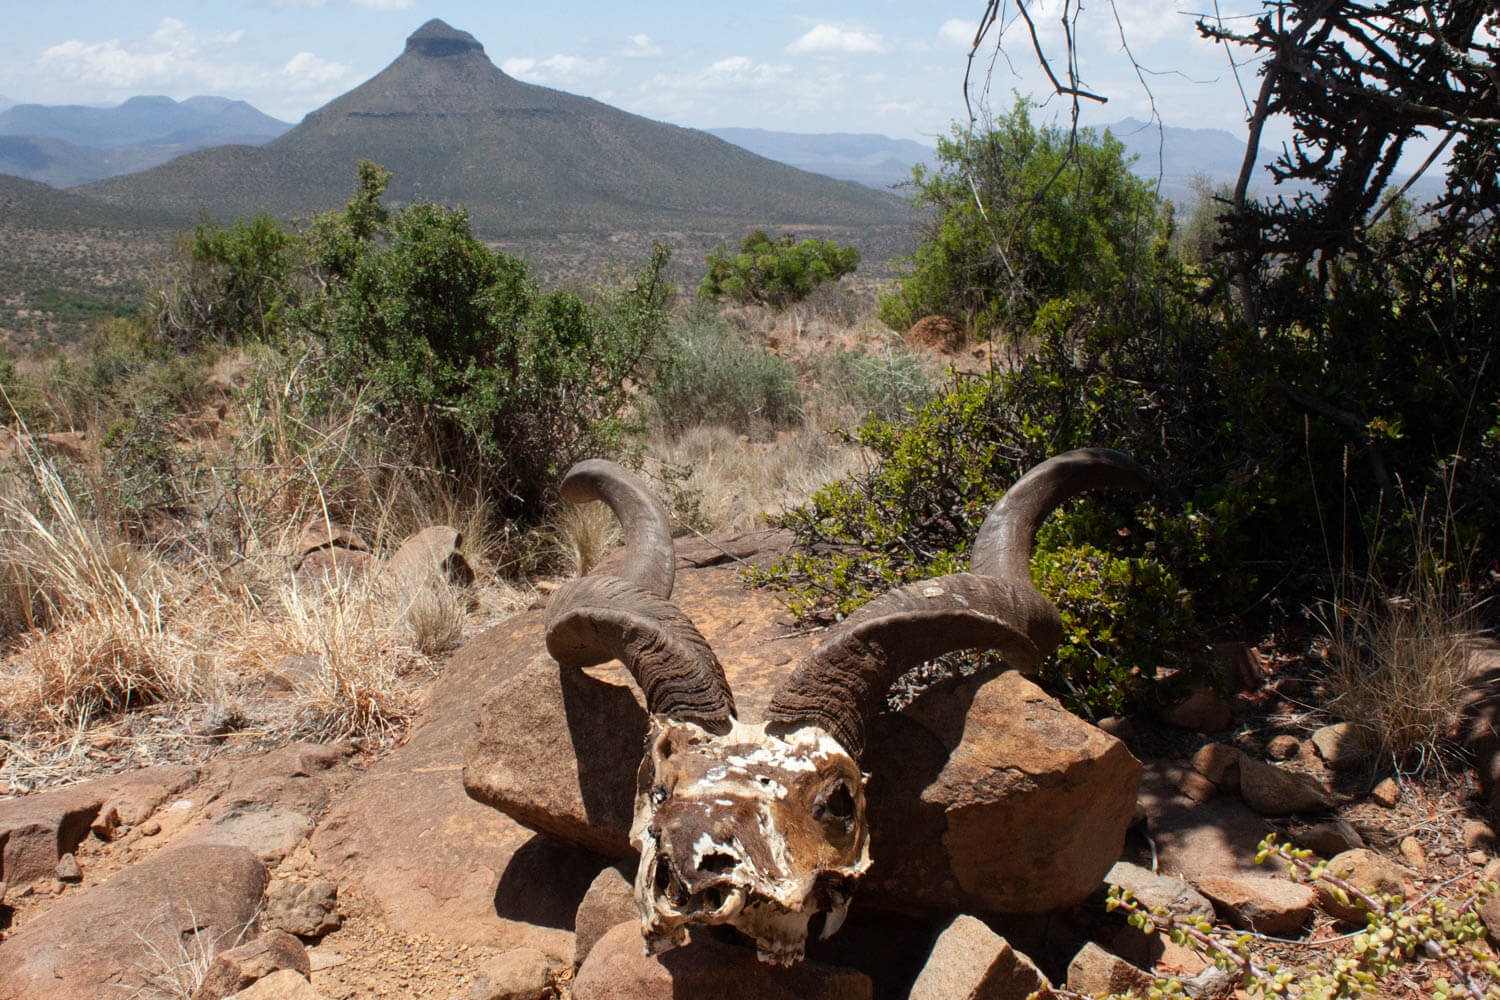 Karoo desert skull and mountain